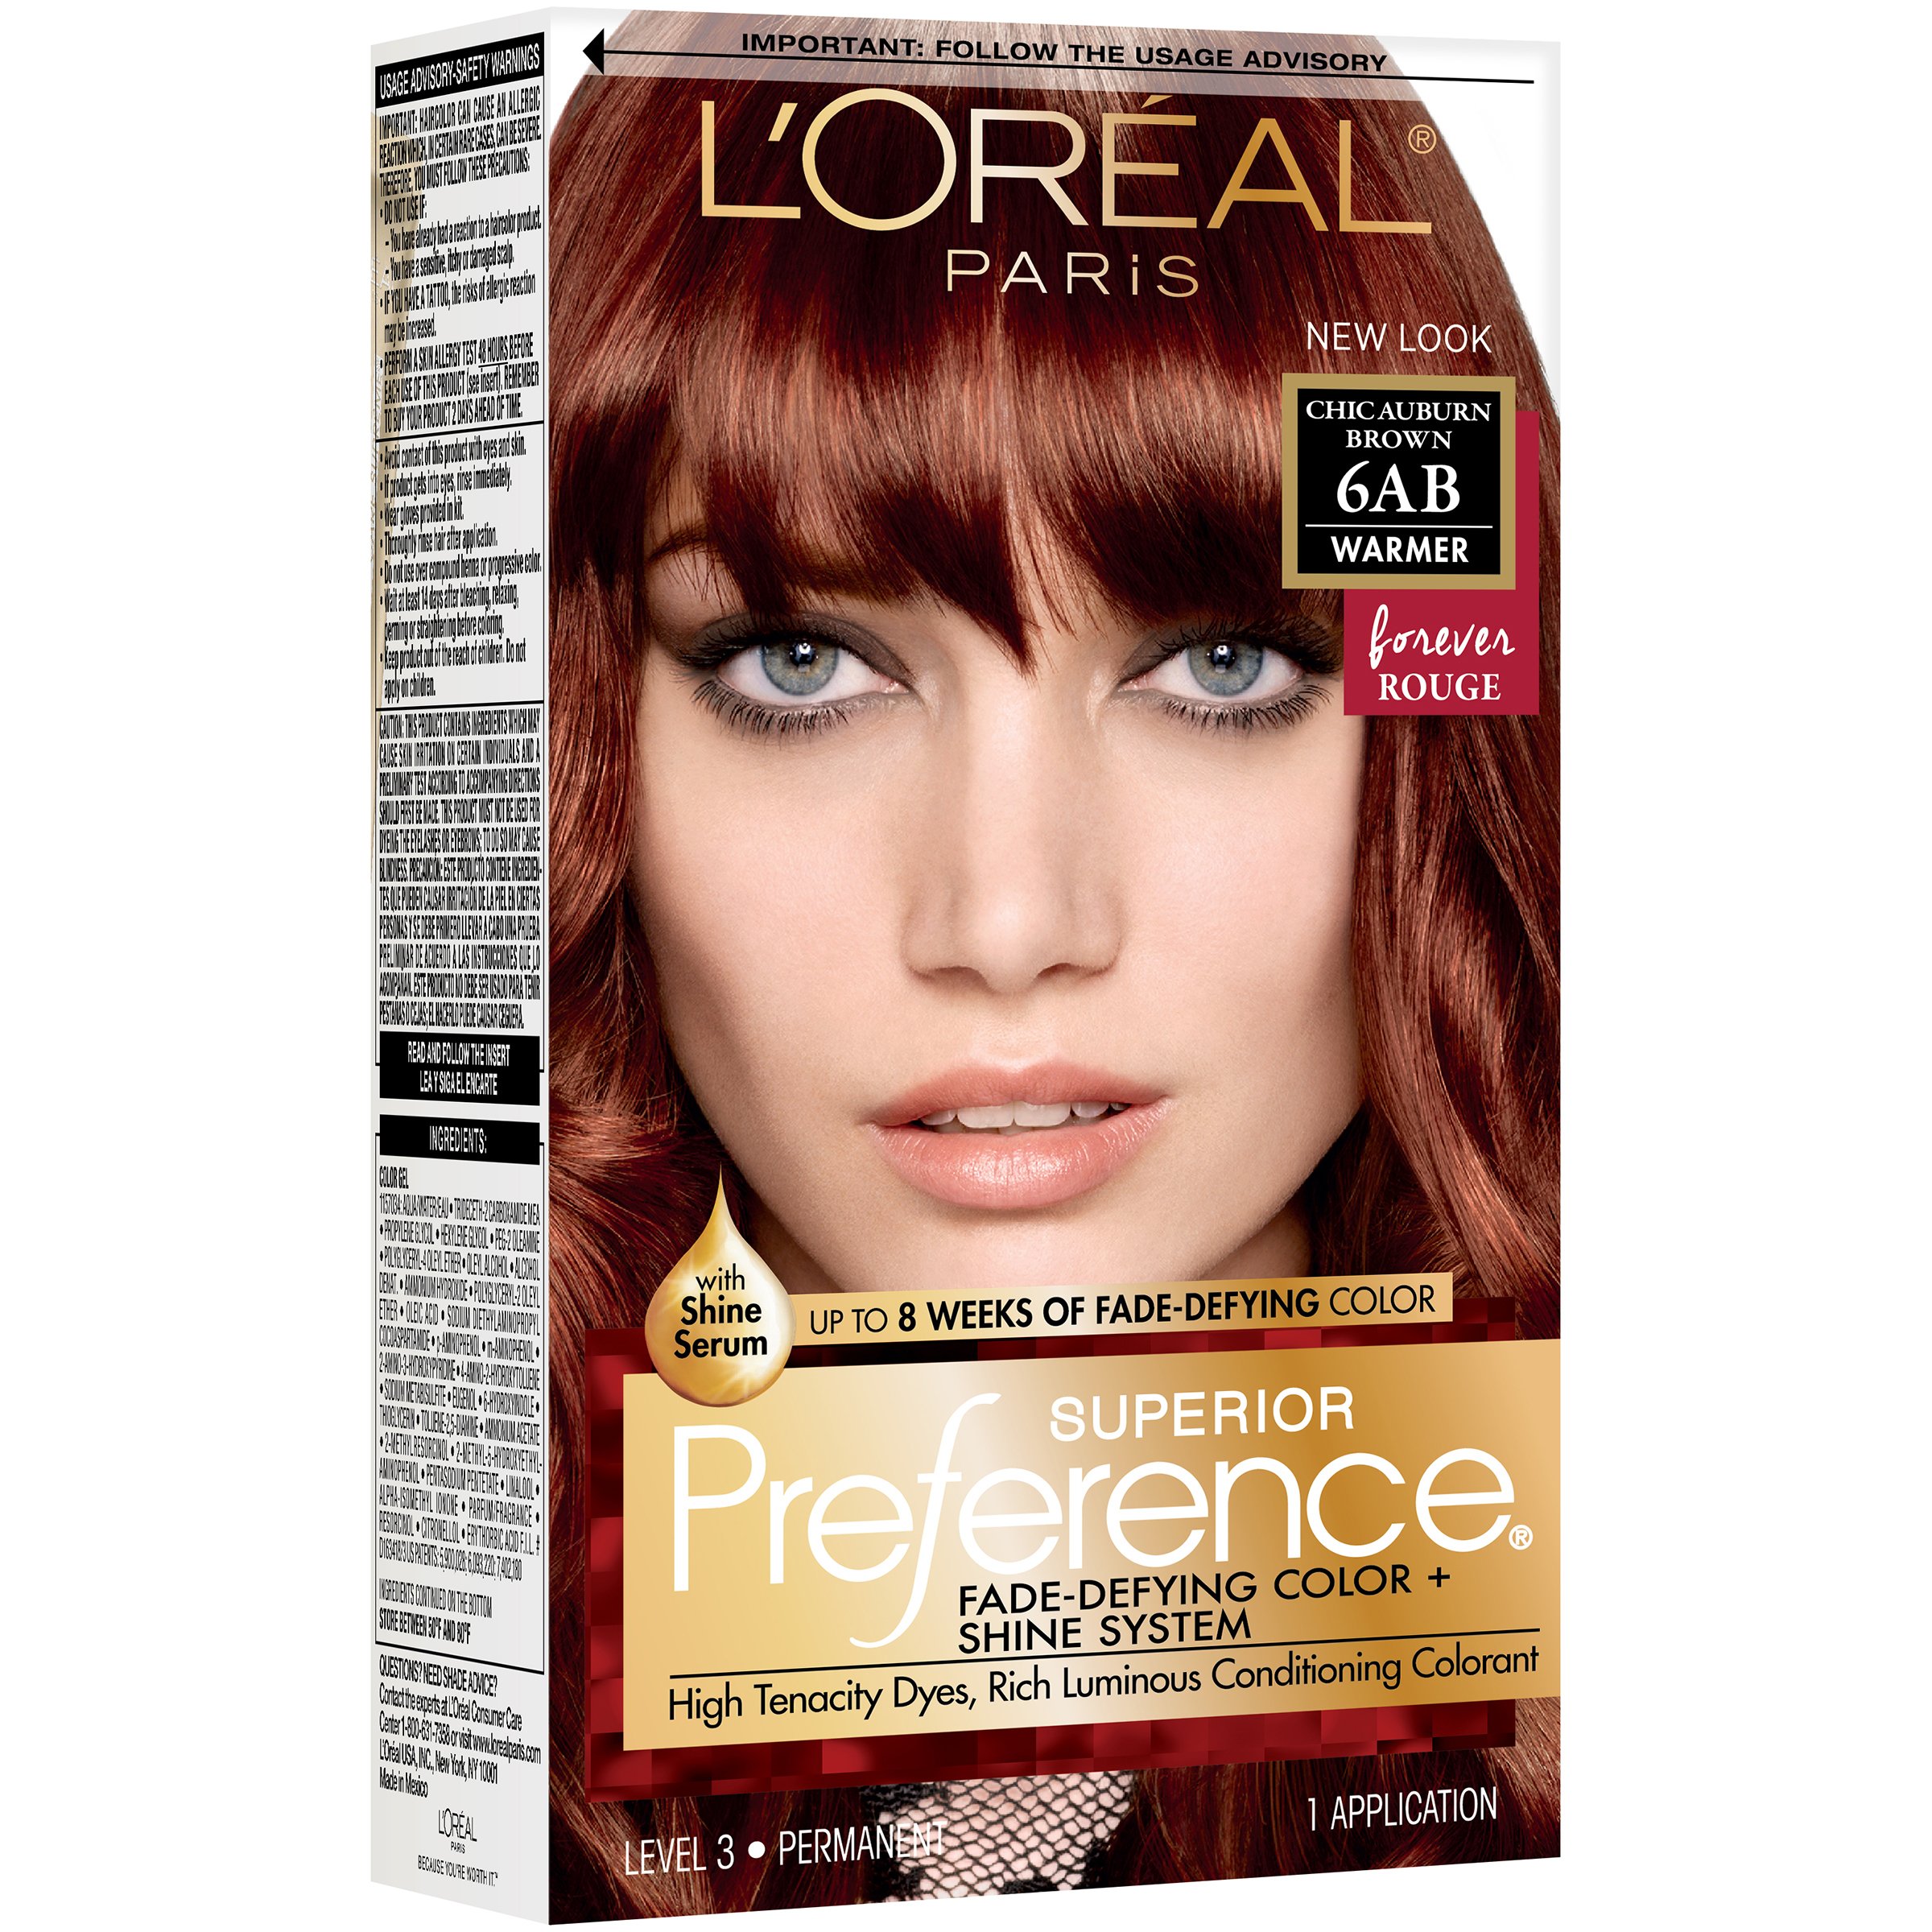 L'Oréal Paris Preference Permanent Hair Color, 6AB Chic Auburn Brown - Shop Hair H-E-B